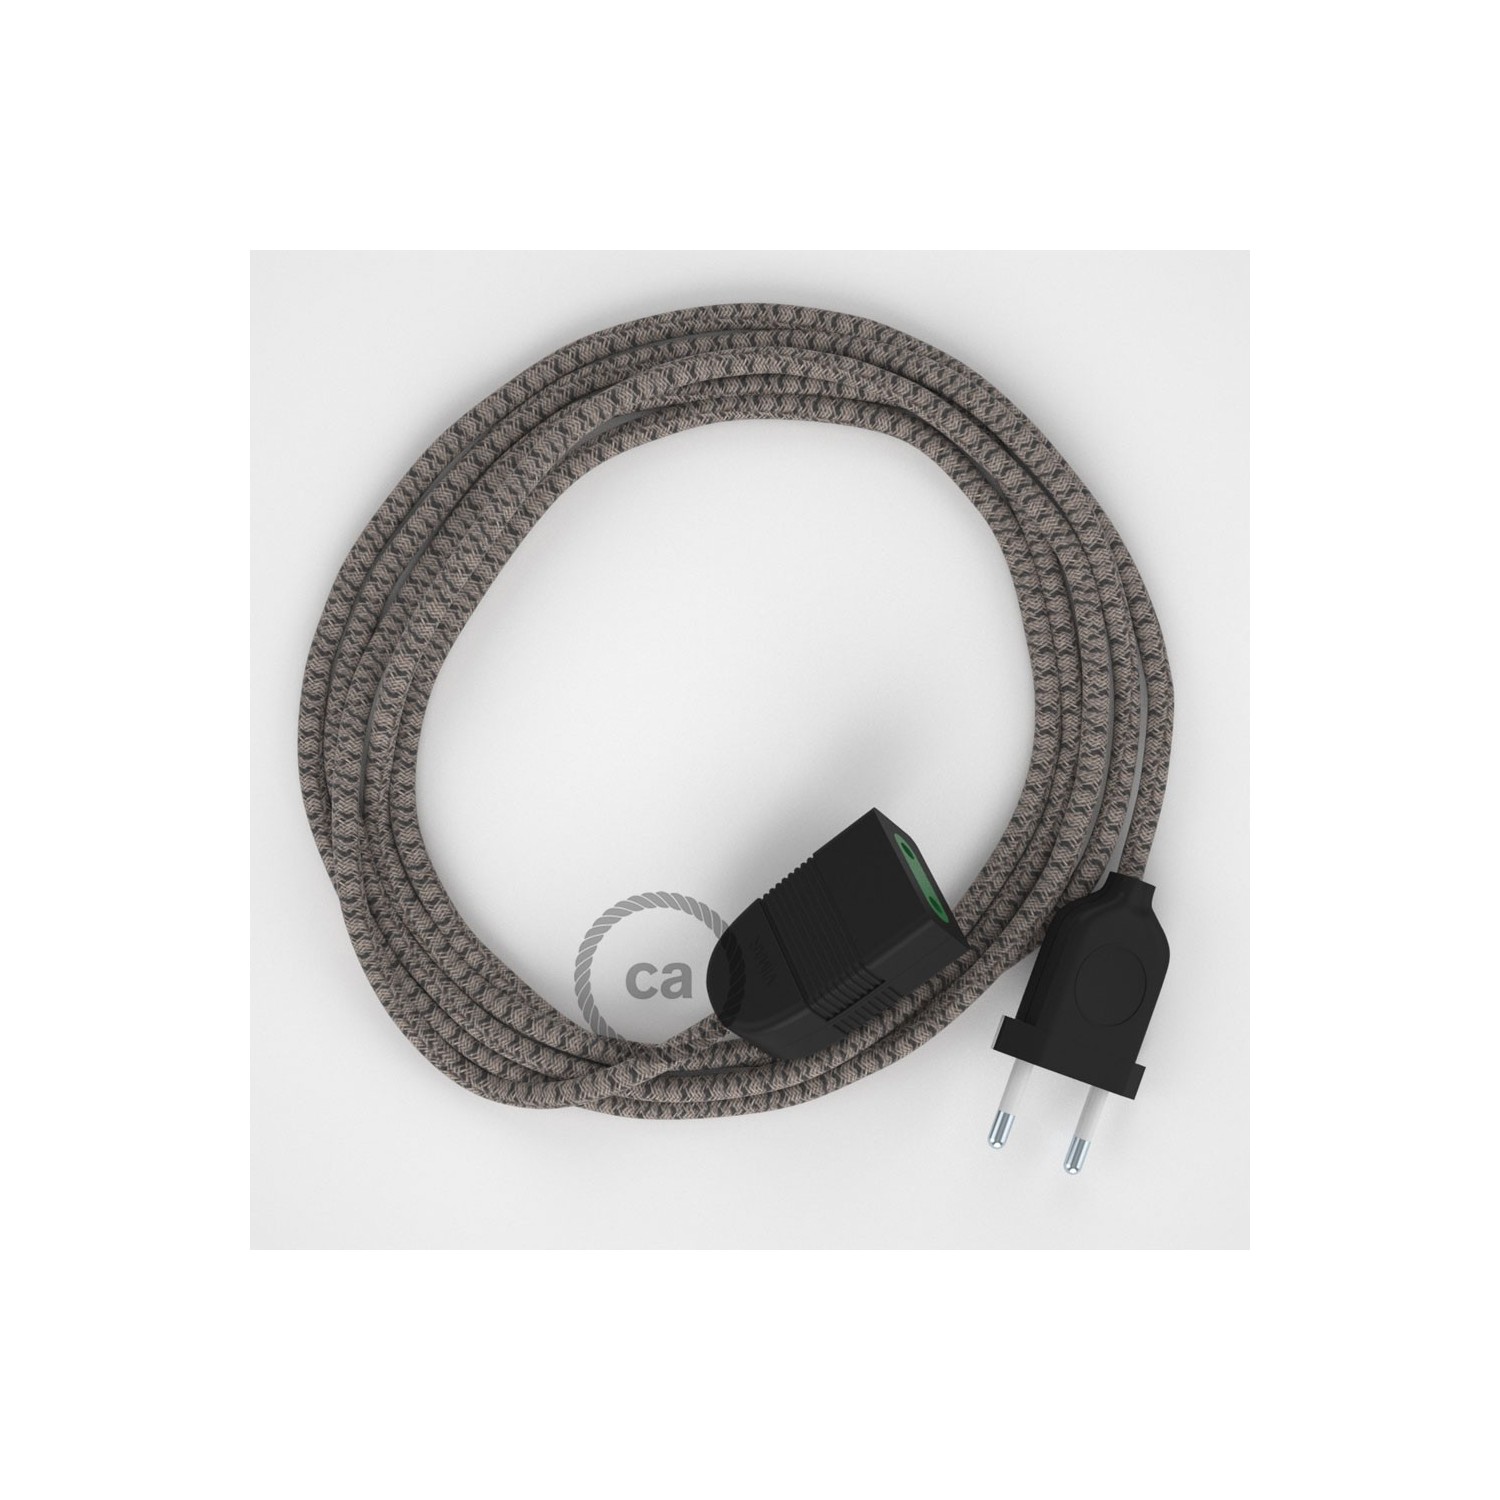 Rallonge électrique avec câble textile RD64 Coton et Lin Naturel Losange Anthracite 2P 10A Made in Italy.